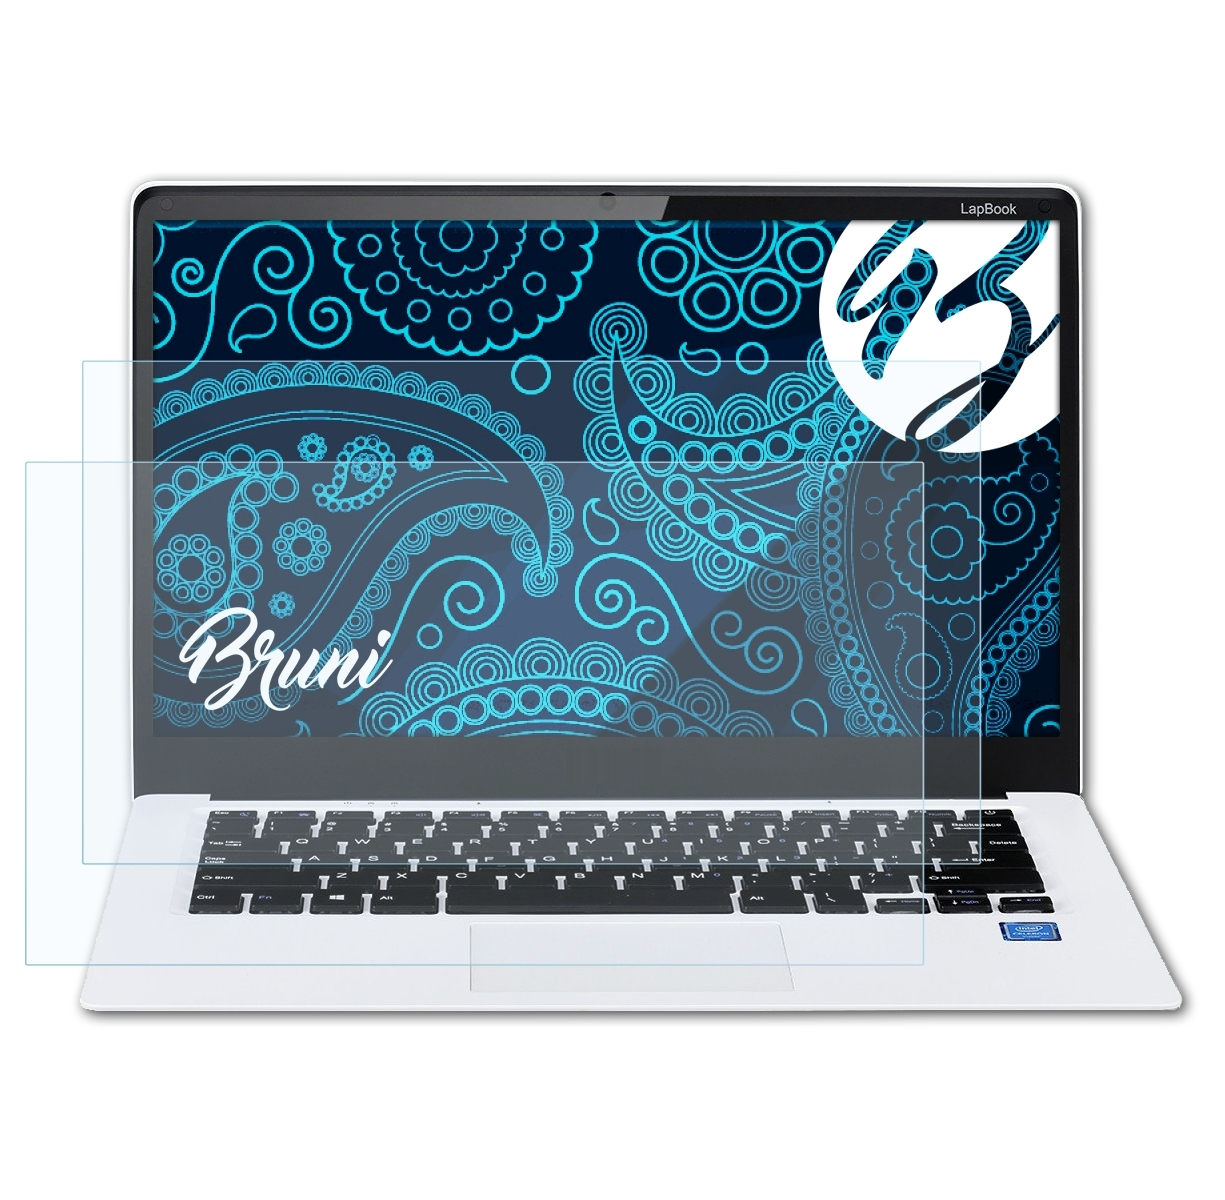 LapBook Basics-Clear BRUNI Chuwi 2x 14,1) Schutzfolie(für